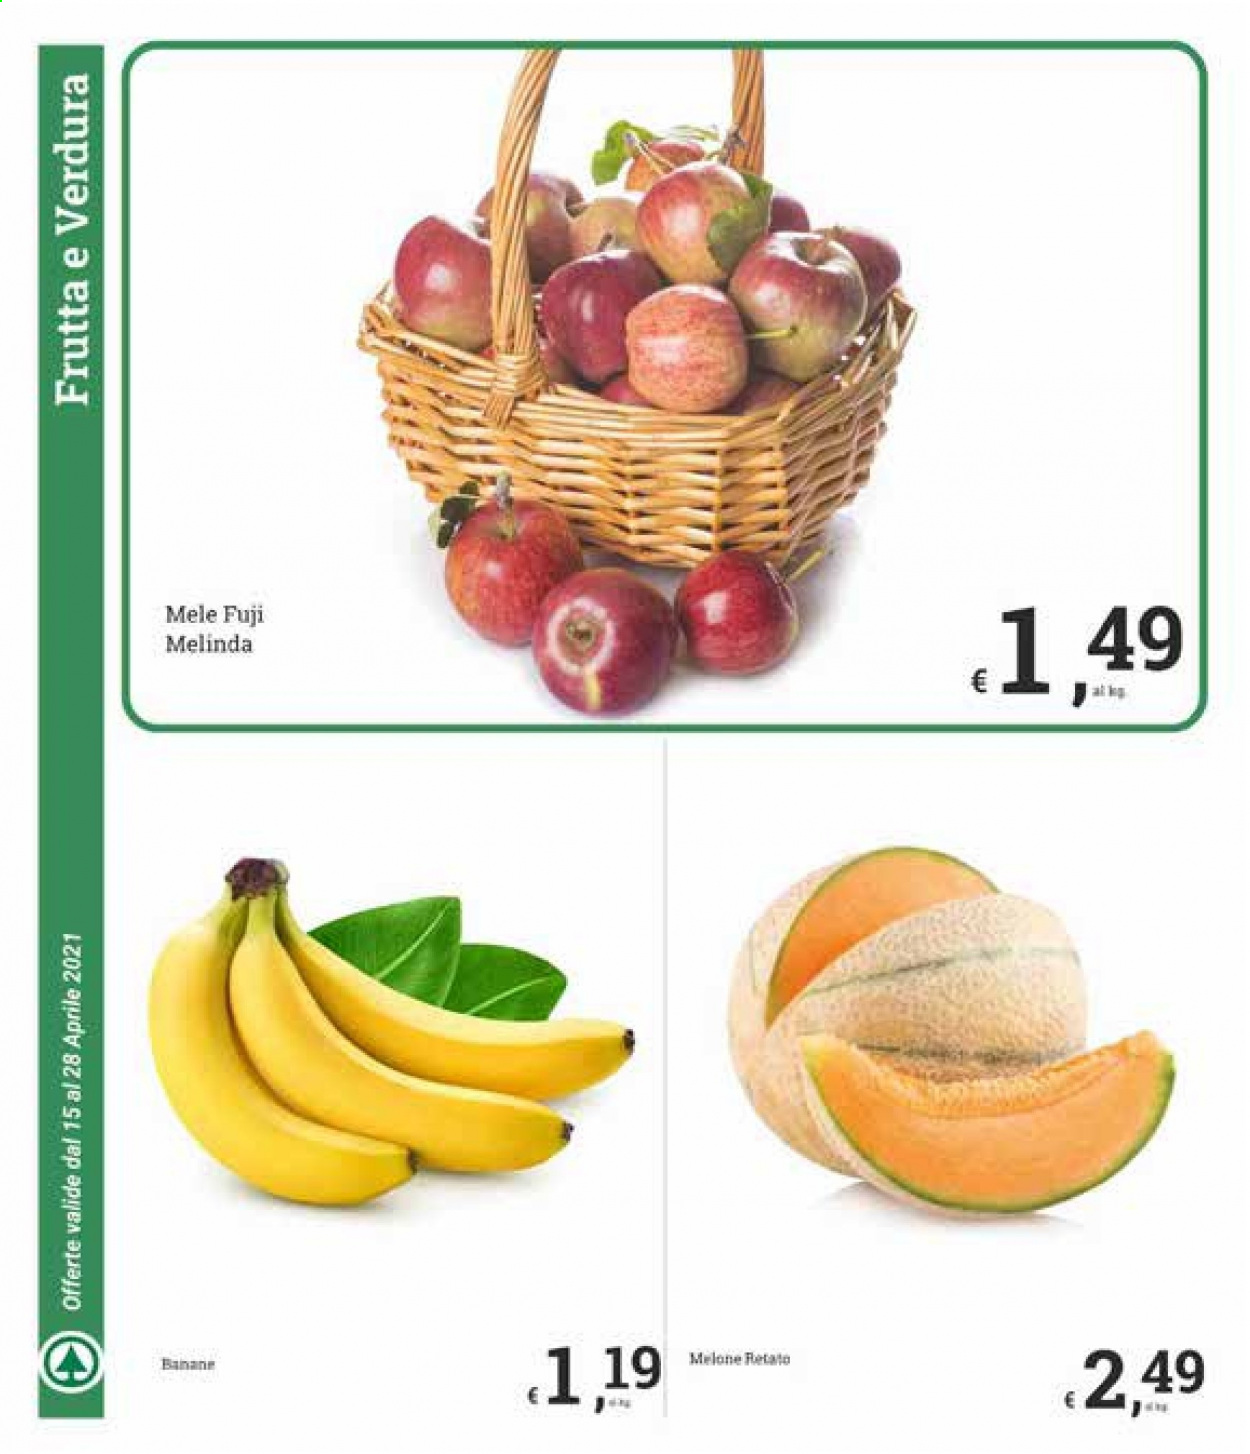 thumbnail - Volantino Despar - 15/4/2021 - 28/4/2021 - Prodotti in offerta - banane, mele, melone, melone retato. Pagina 4.